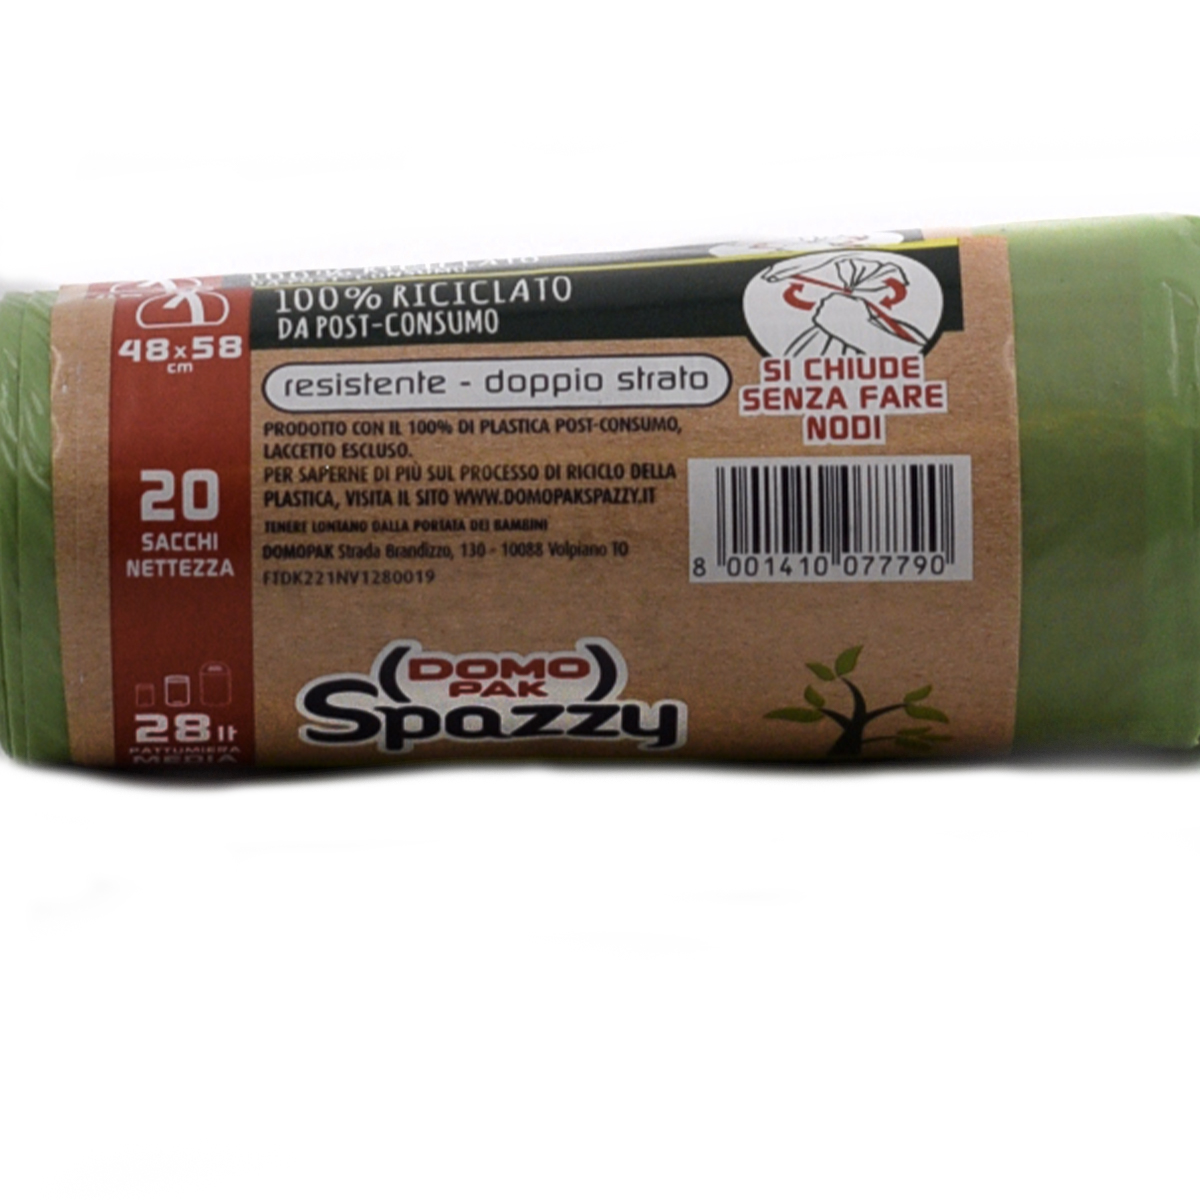 Domo Pak Spazzy Sacco Verde 100% Riciclato 20pz